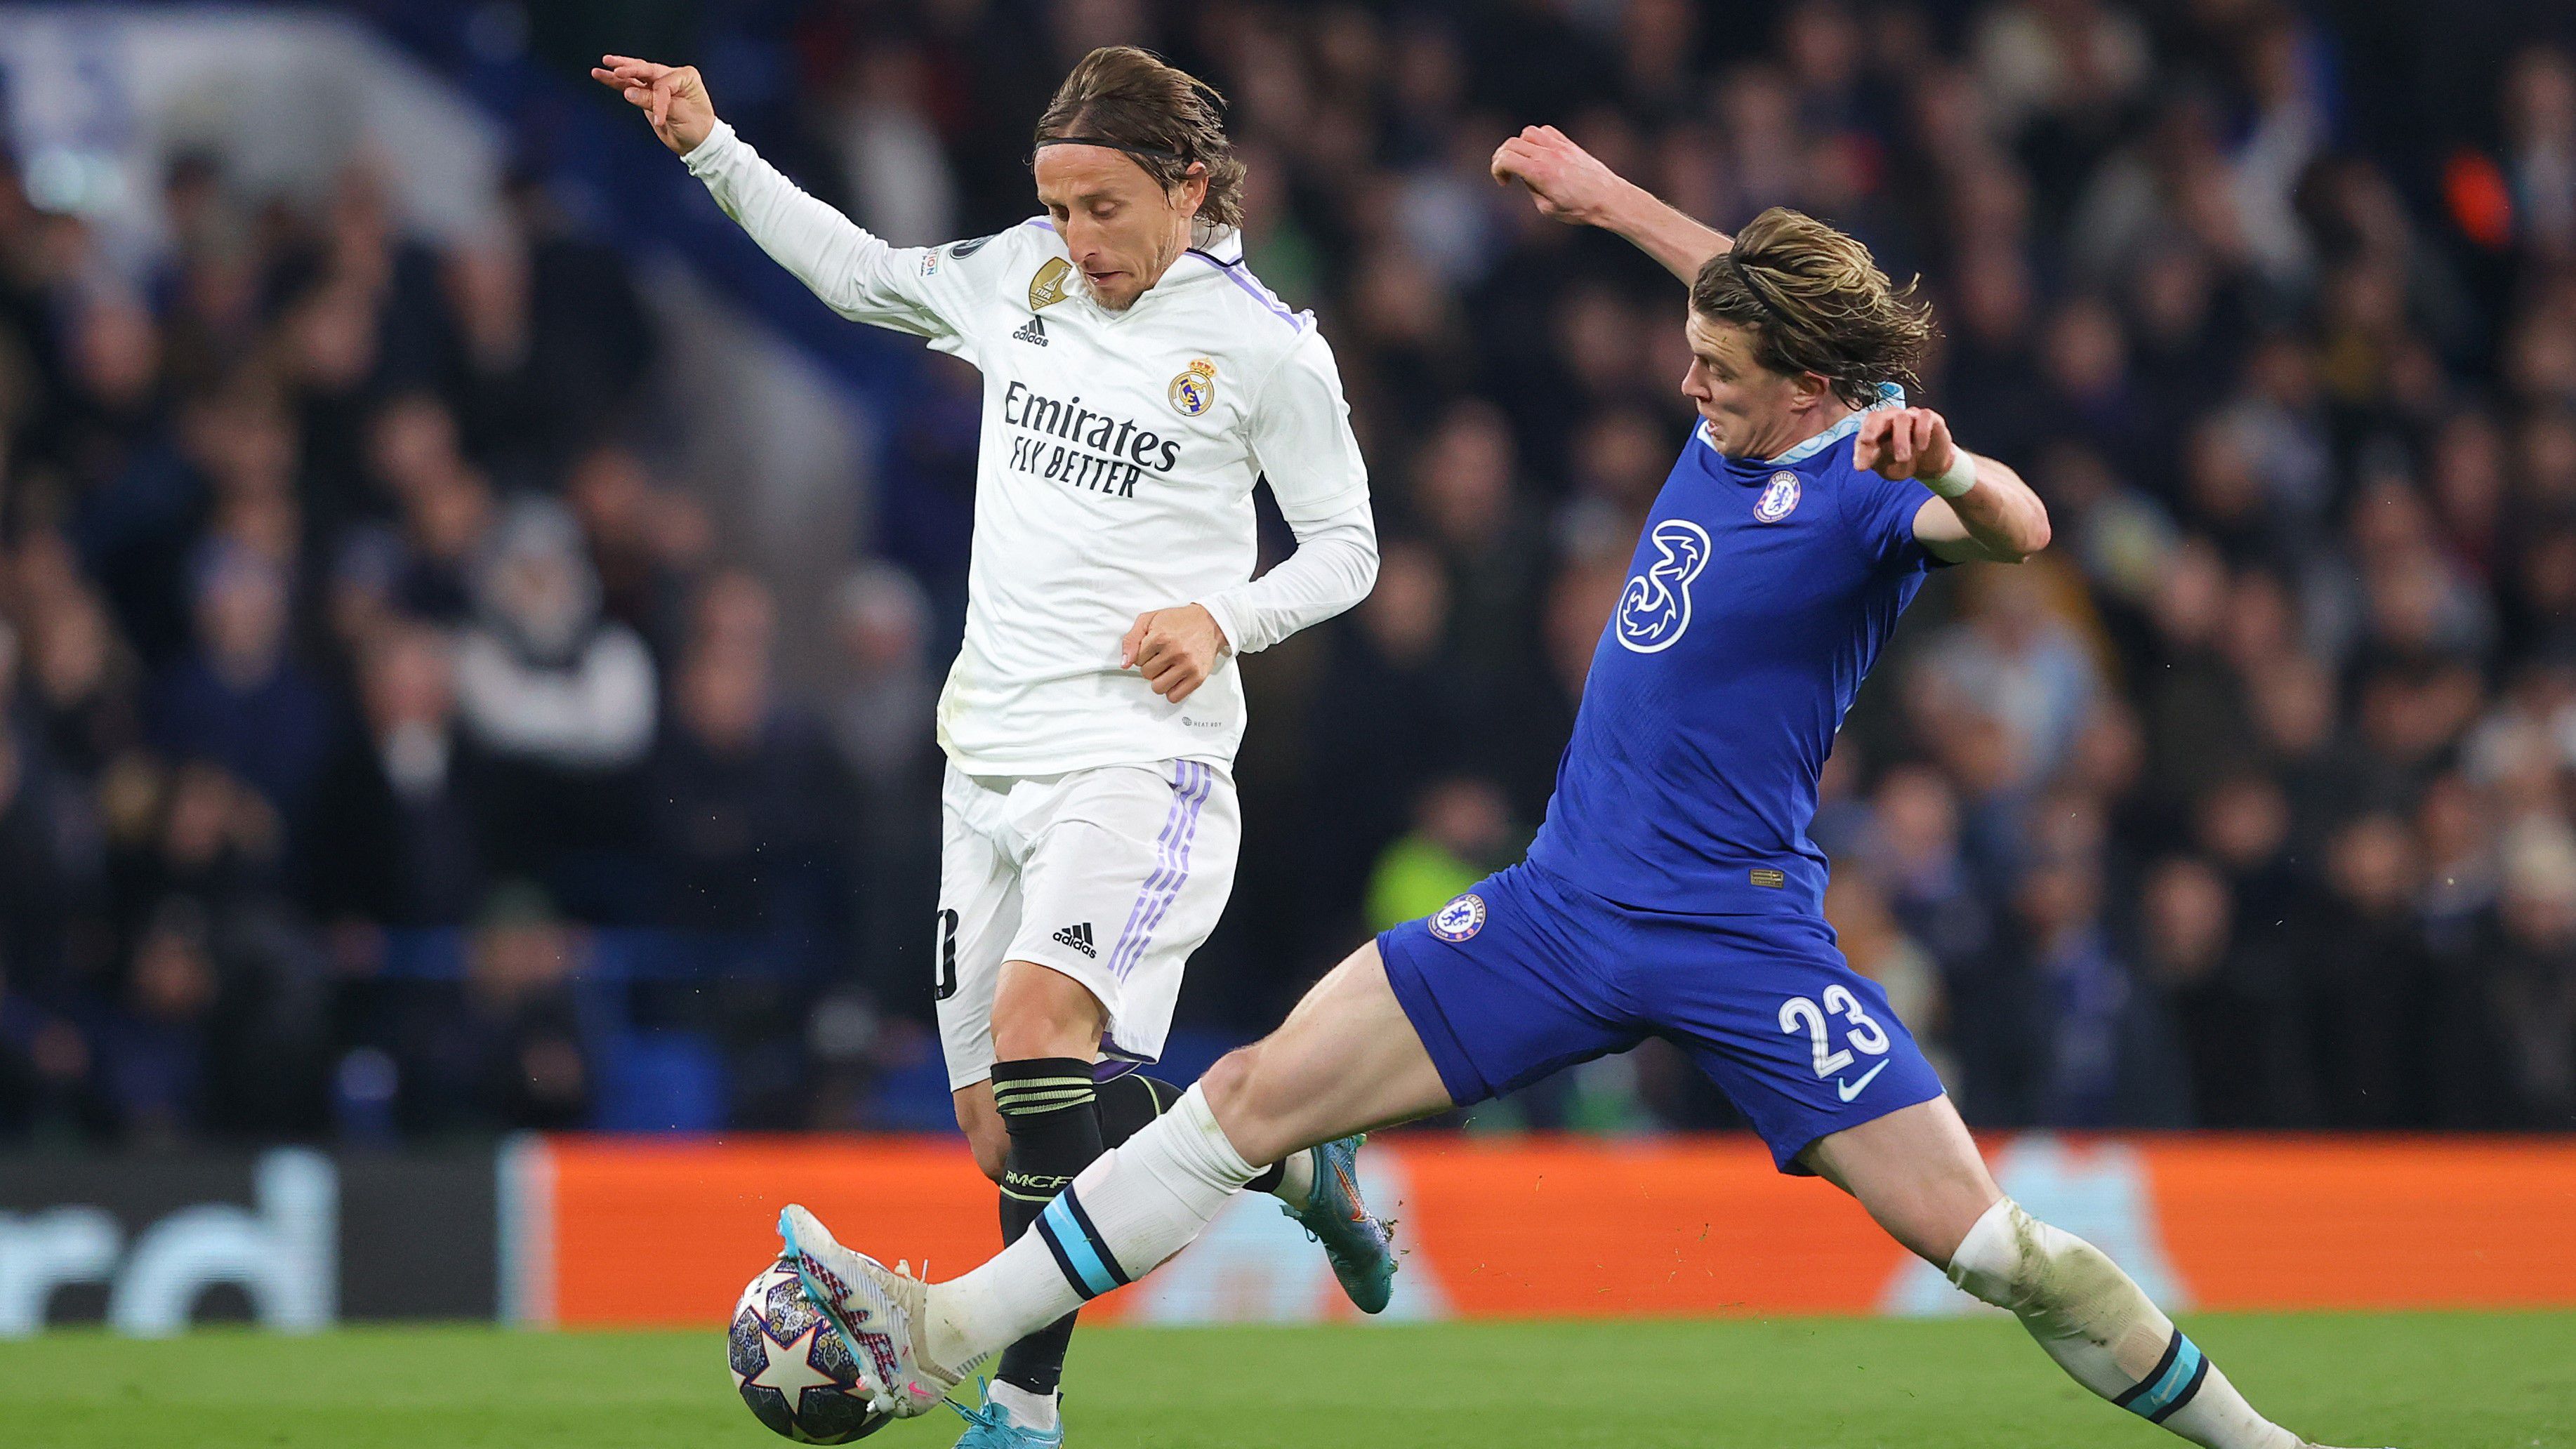 Conor Gallagher (jobbra) szerint a Chelsea jobban futballozott mint az utóbbi hetekben, ám a helyzetkihasználás a Real Madrid javára döntötte el a meccset – és a párharcot is.